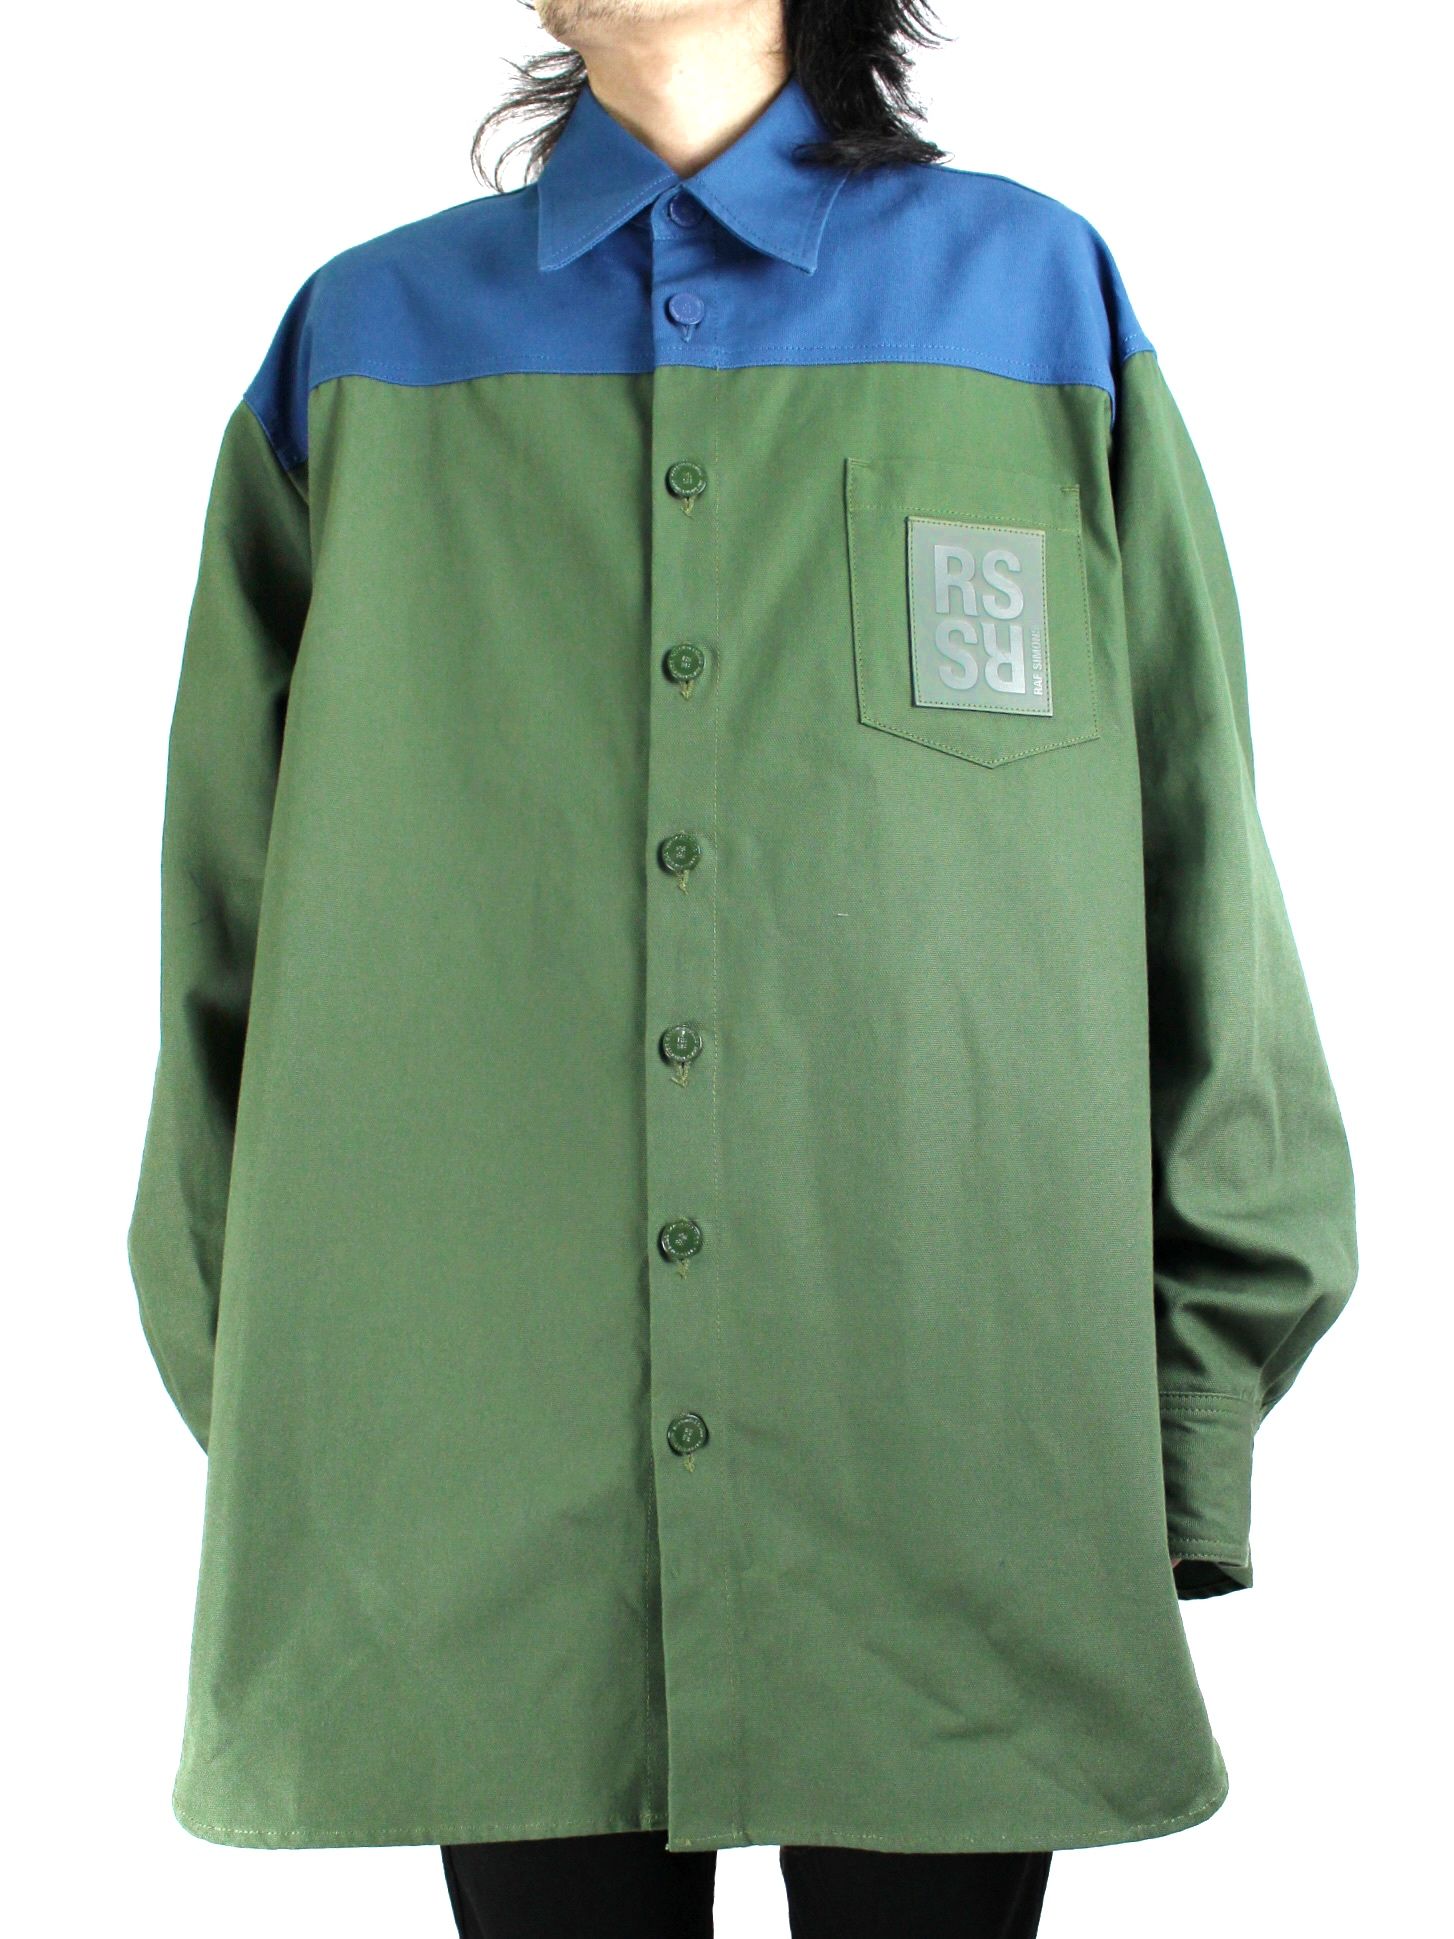 ラフシモンズ 22AW 222-M244 Oversized bicolor denim shirts with R pin in back バイカラーオーバーサイズデニム長袖シャツ  メンズ S